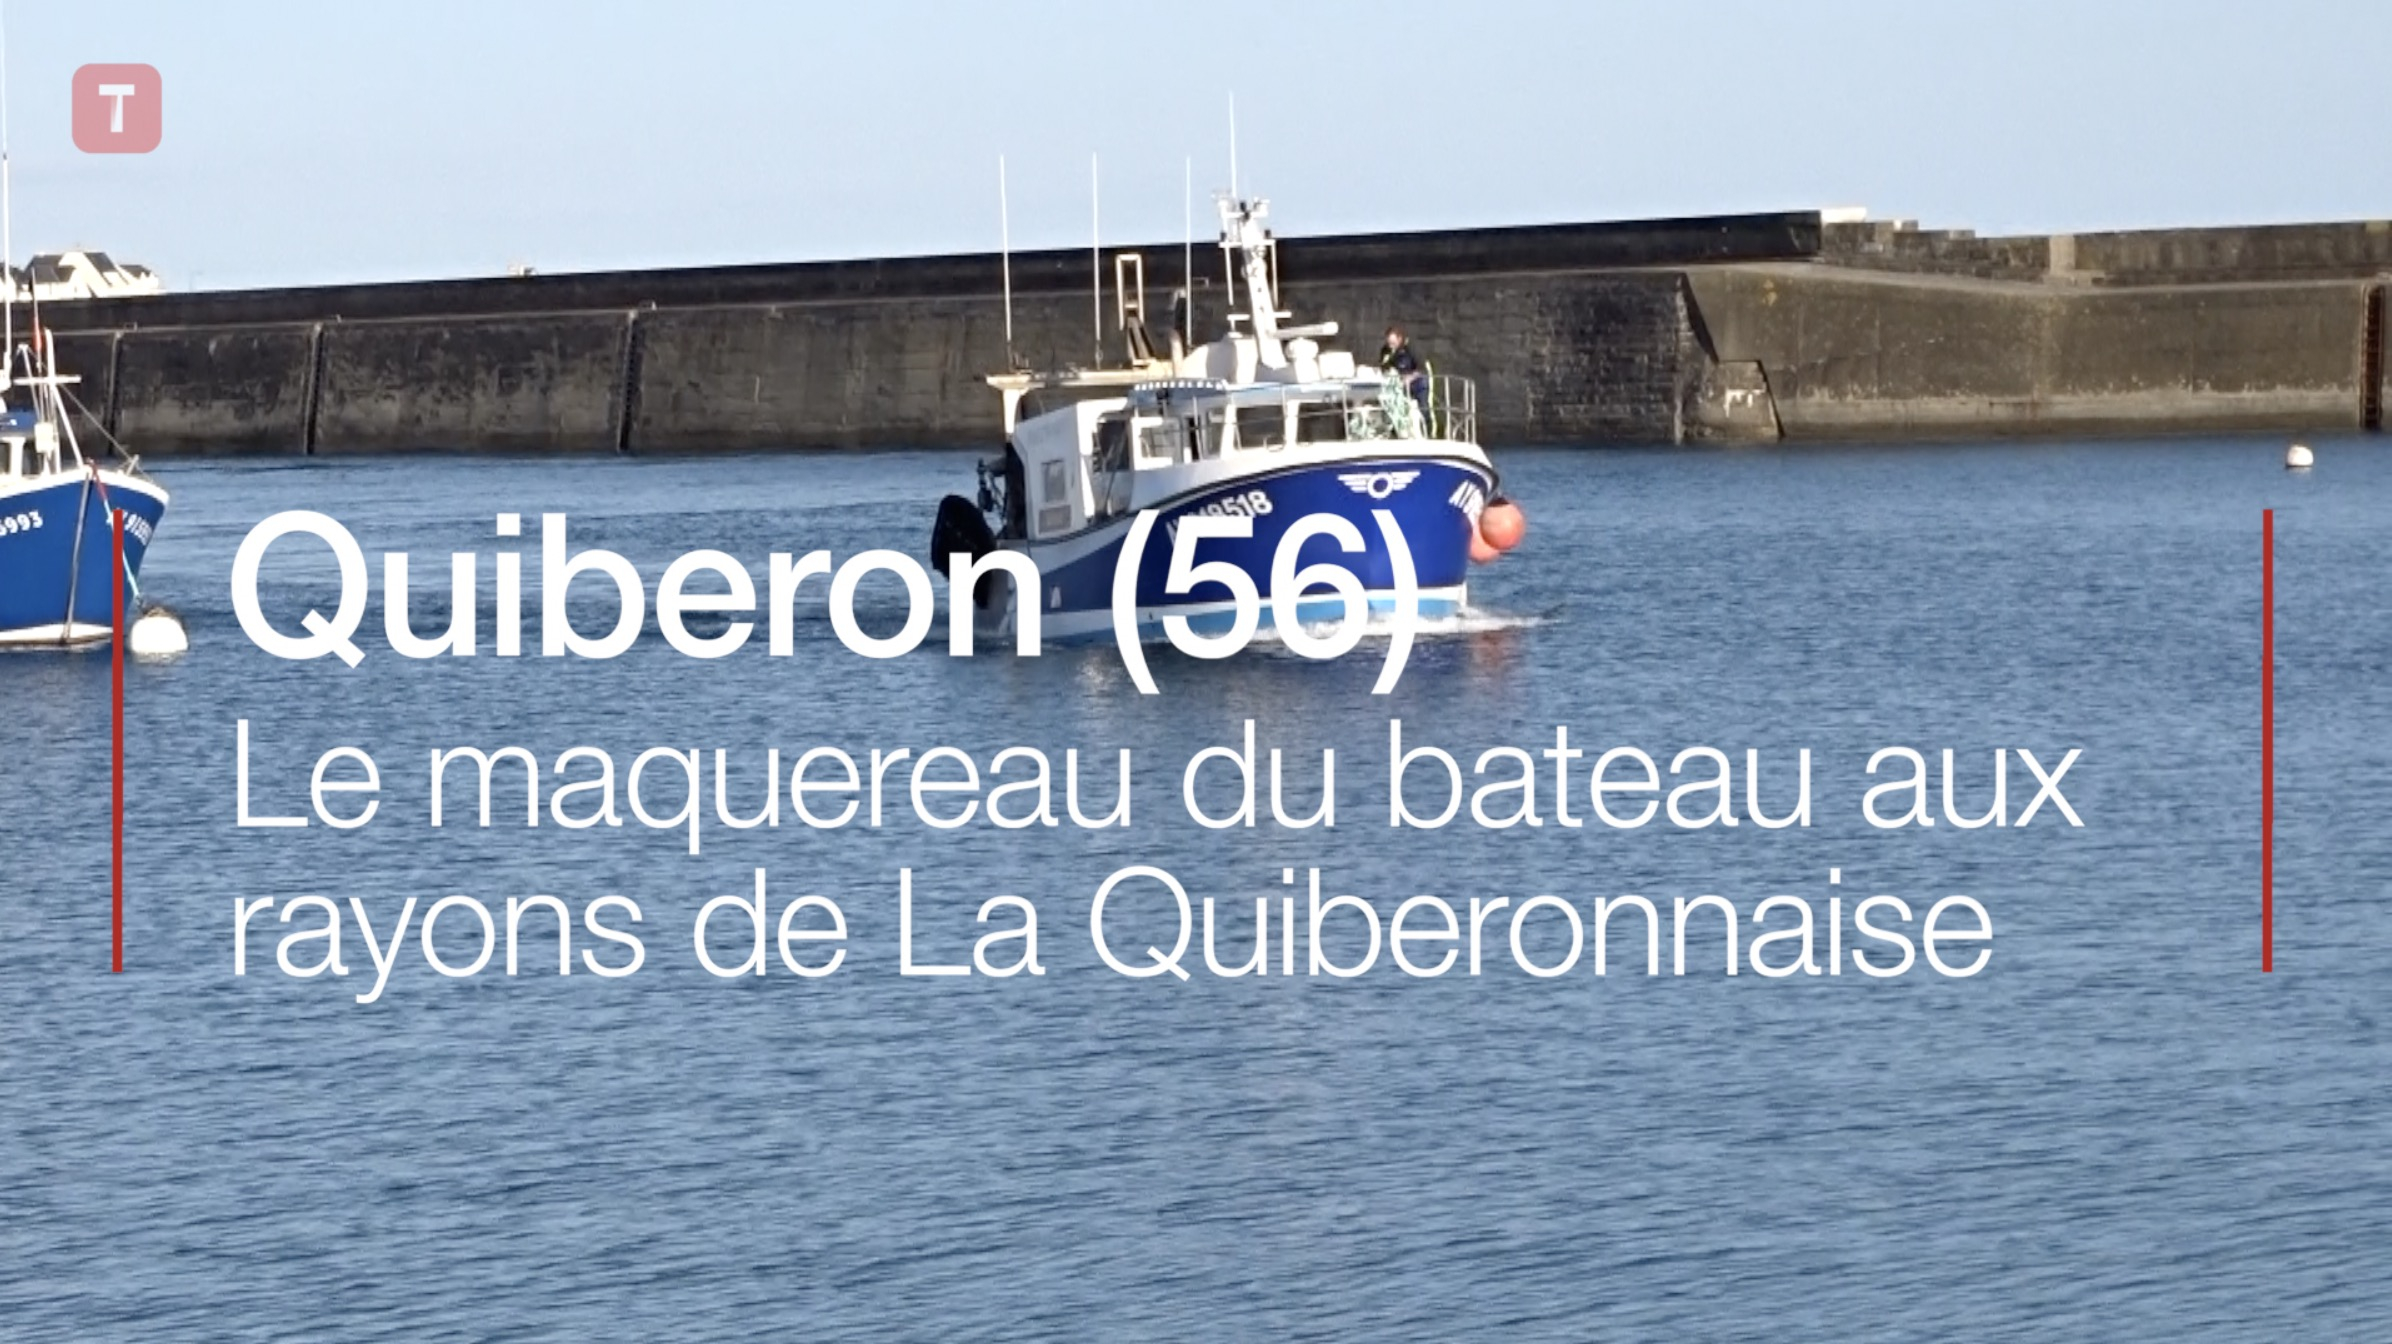 Quiberon (56). Le maquereau du bateau aux rayons de La Quiberonnaise (Le Télégramme)